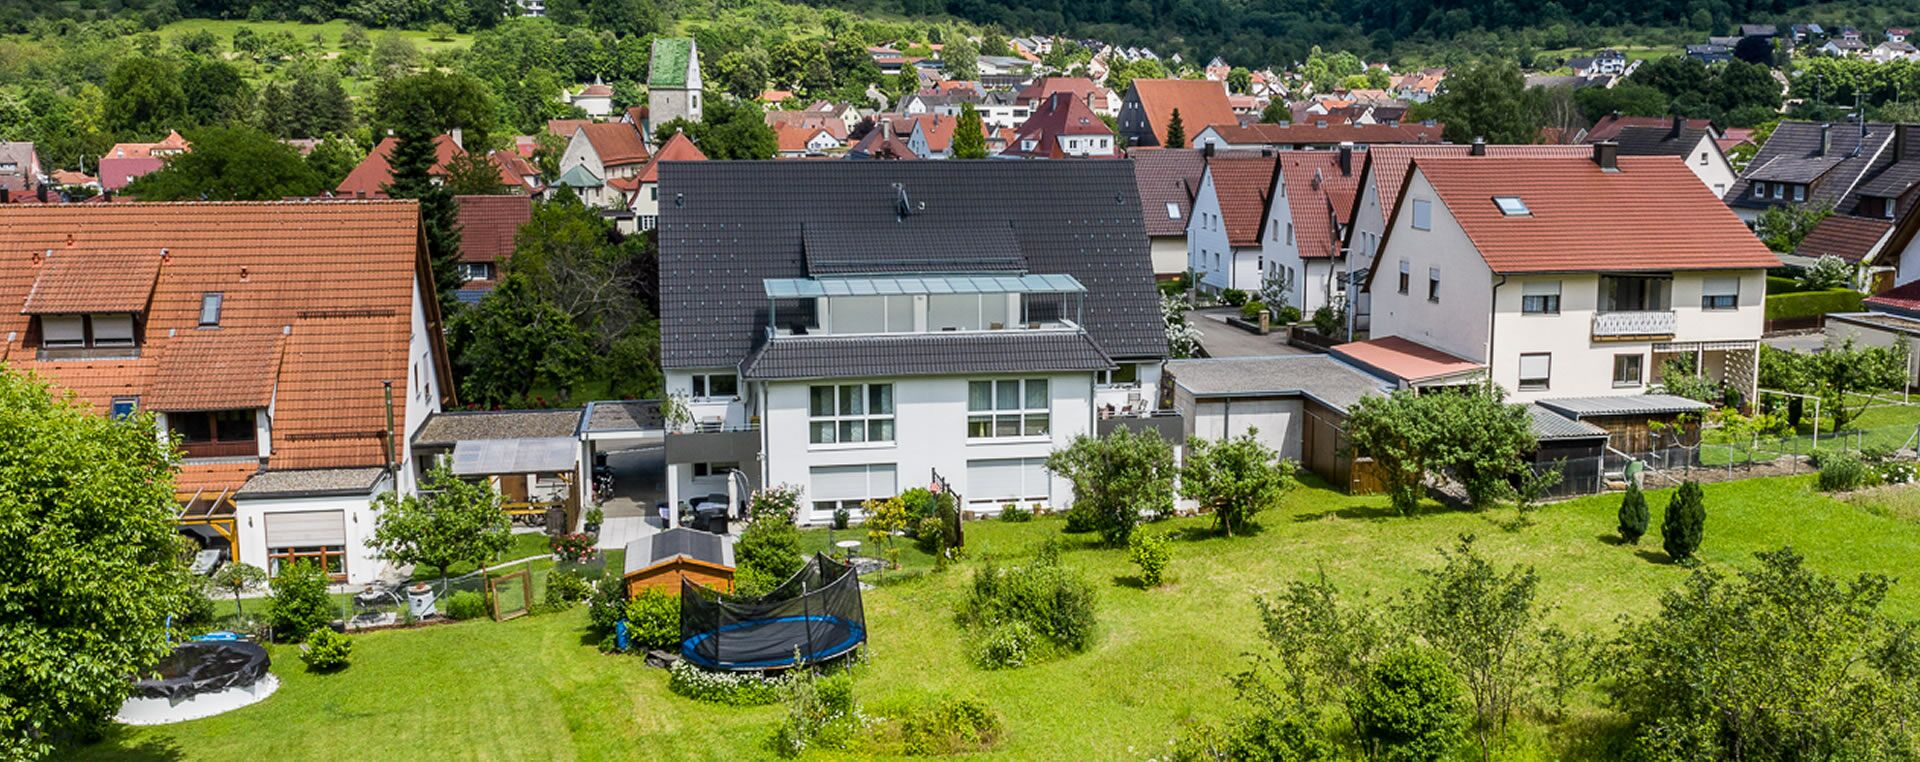 Haus oder Wohnung kaufen bei Esslingen - Einfamilienhaus & Eigentumswohnung